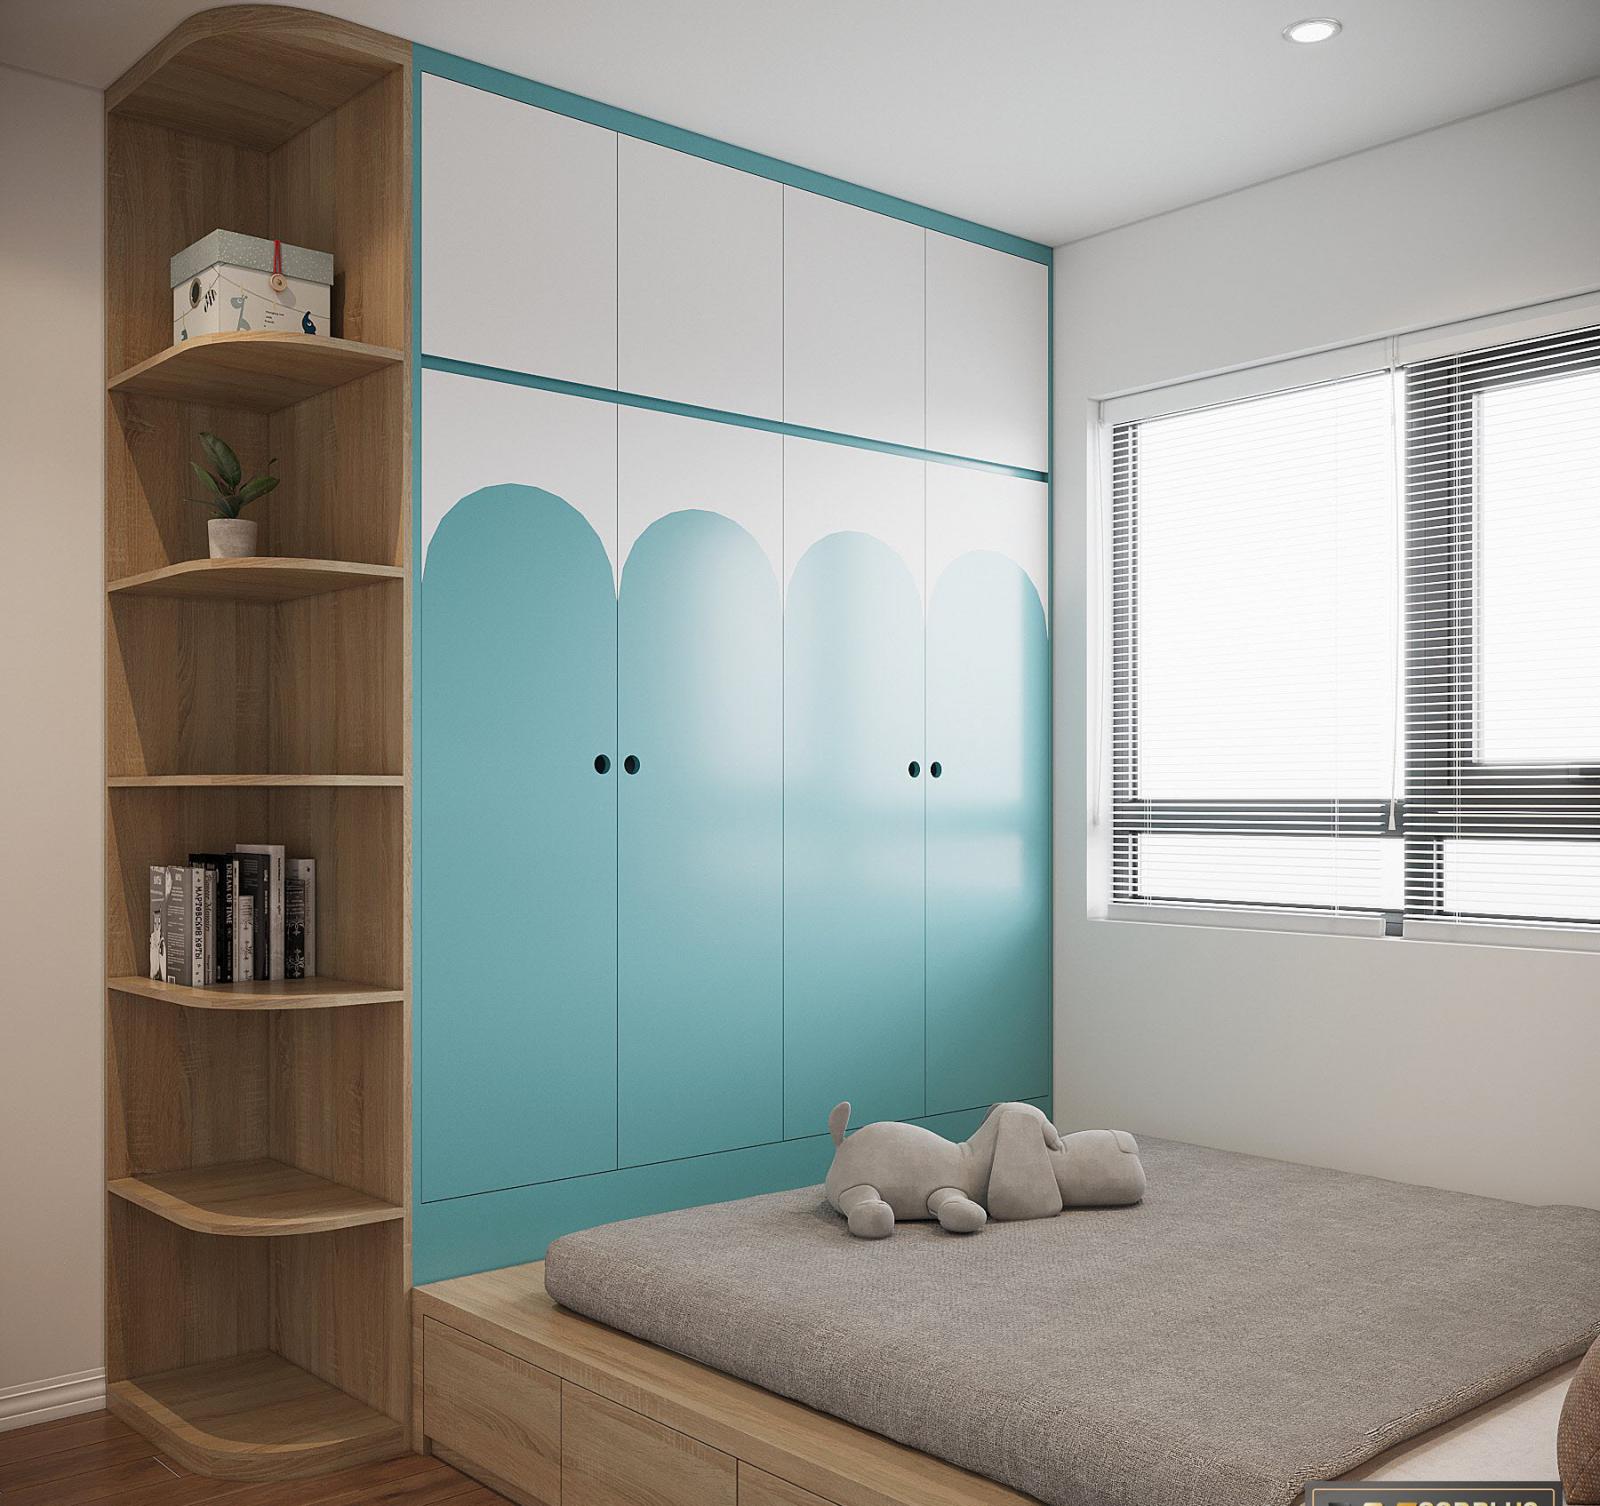 Tủ quần áo sơn màu xanh dương dịu mát, kết hợp hài hòa với nội thất gỗ.